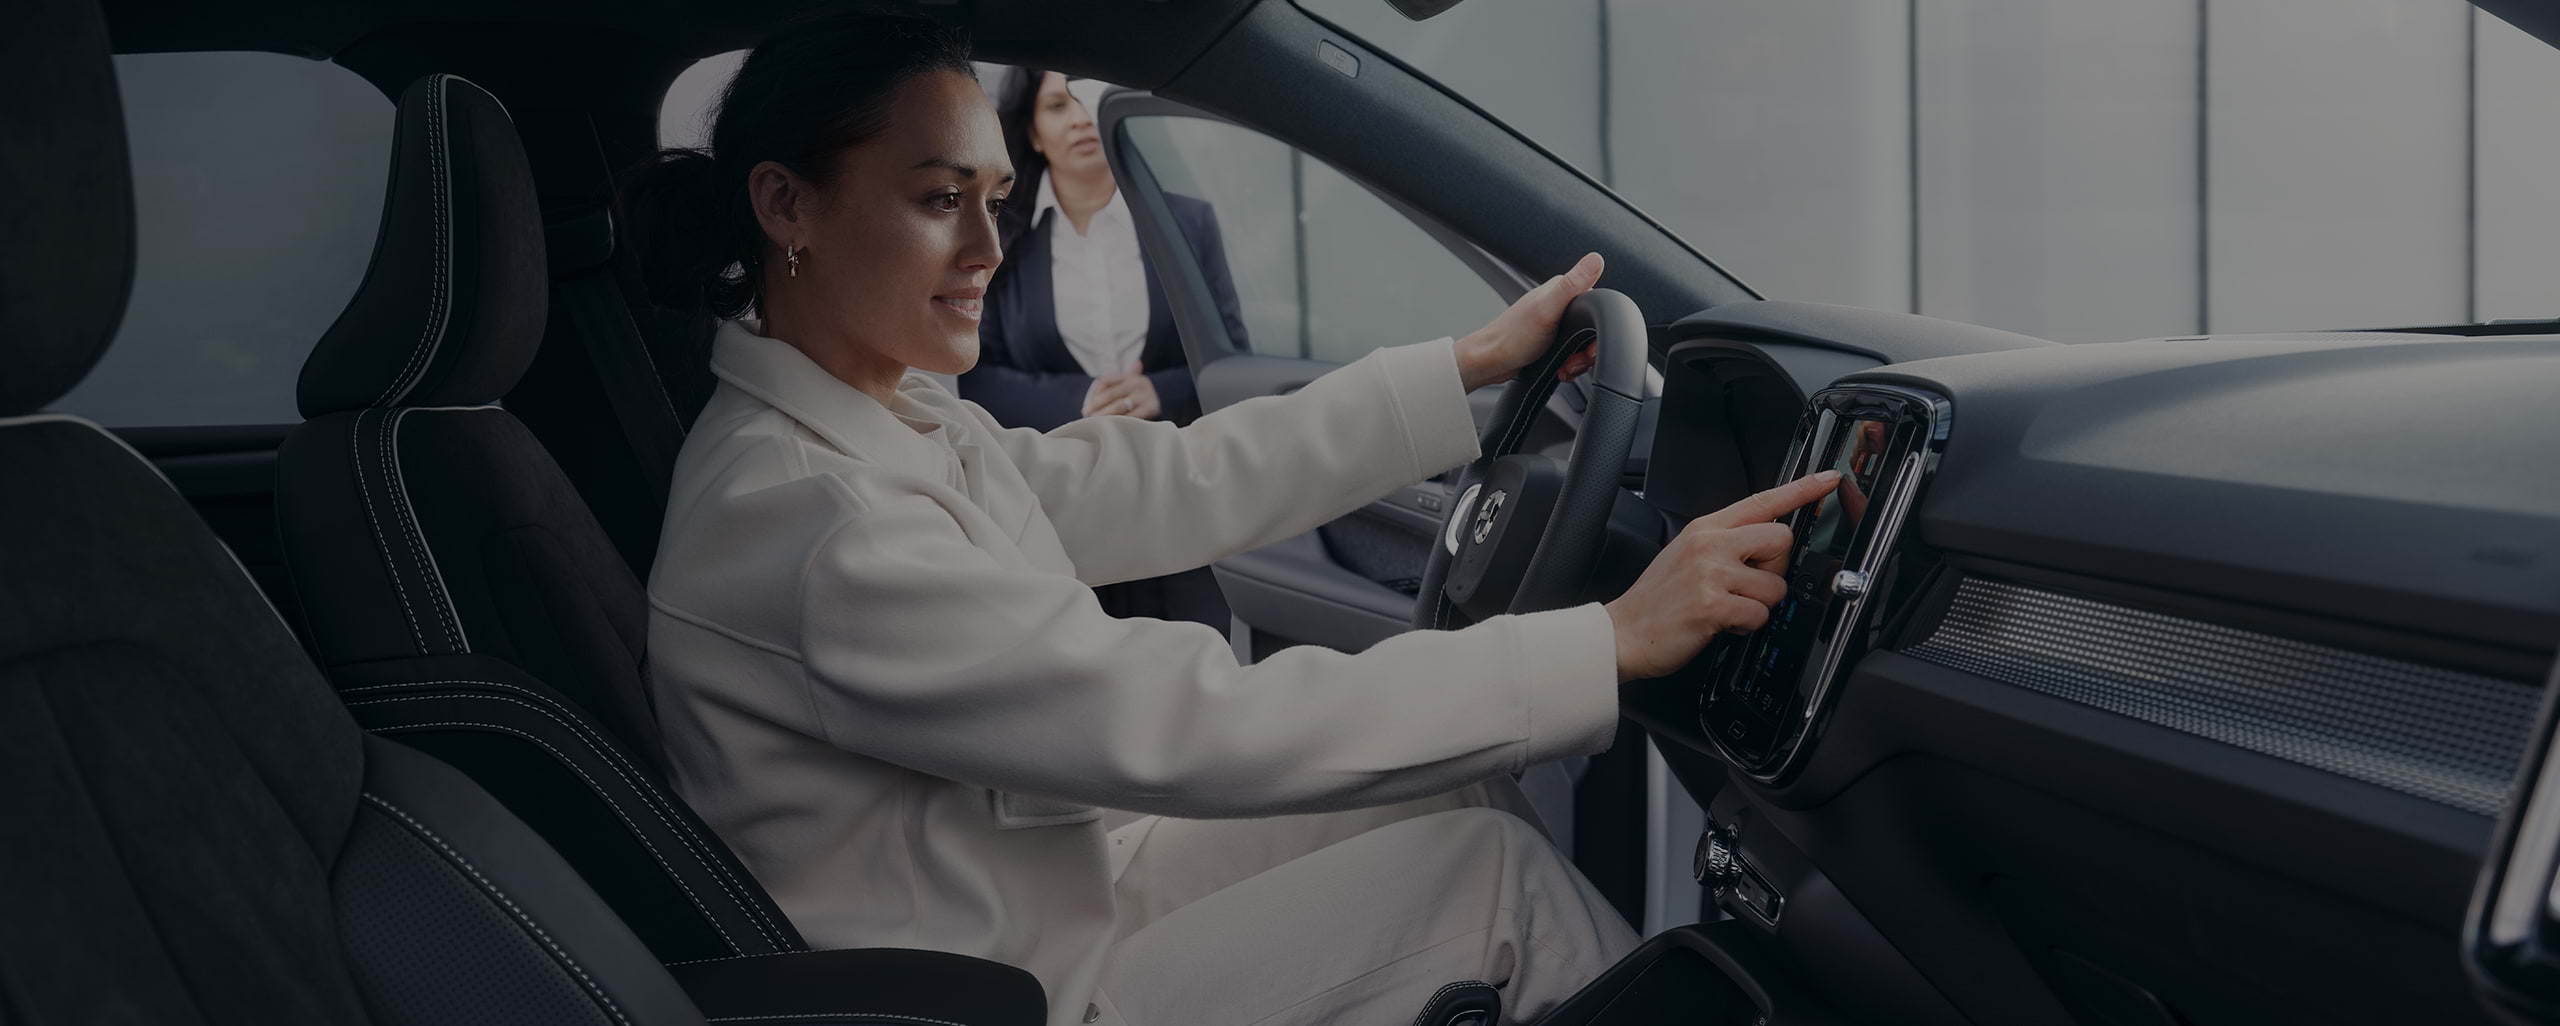 Pardavėjos prižiūrima jauna moteris šypsodamasi sėdi vairuotojo vietoje ir liečia „Volvo“ automobilio centrinę konsolę.